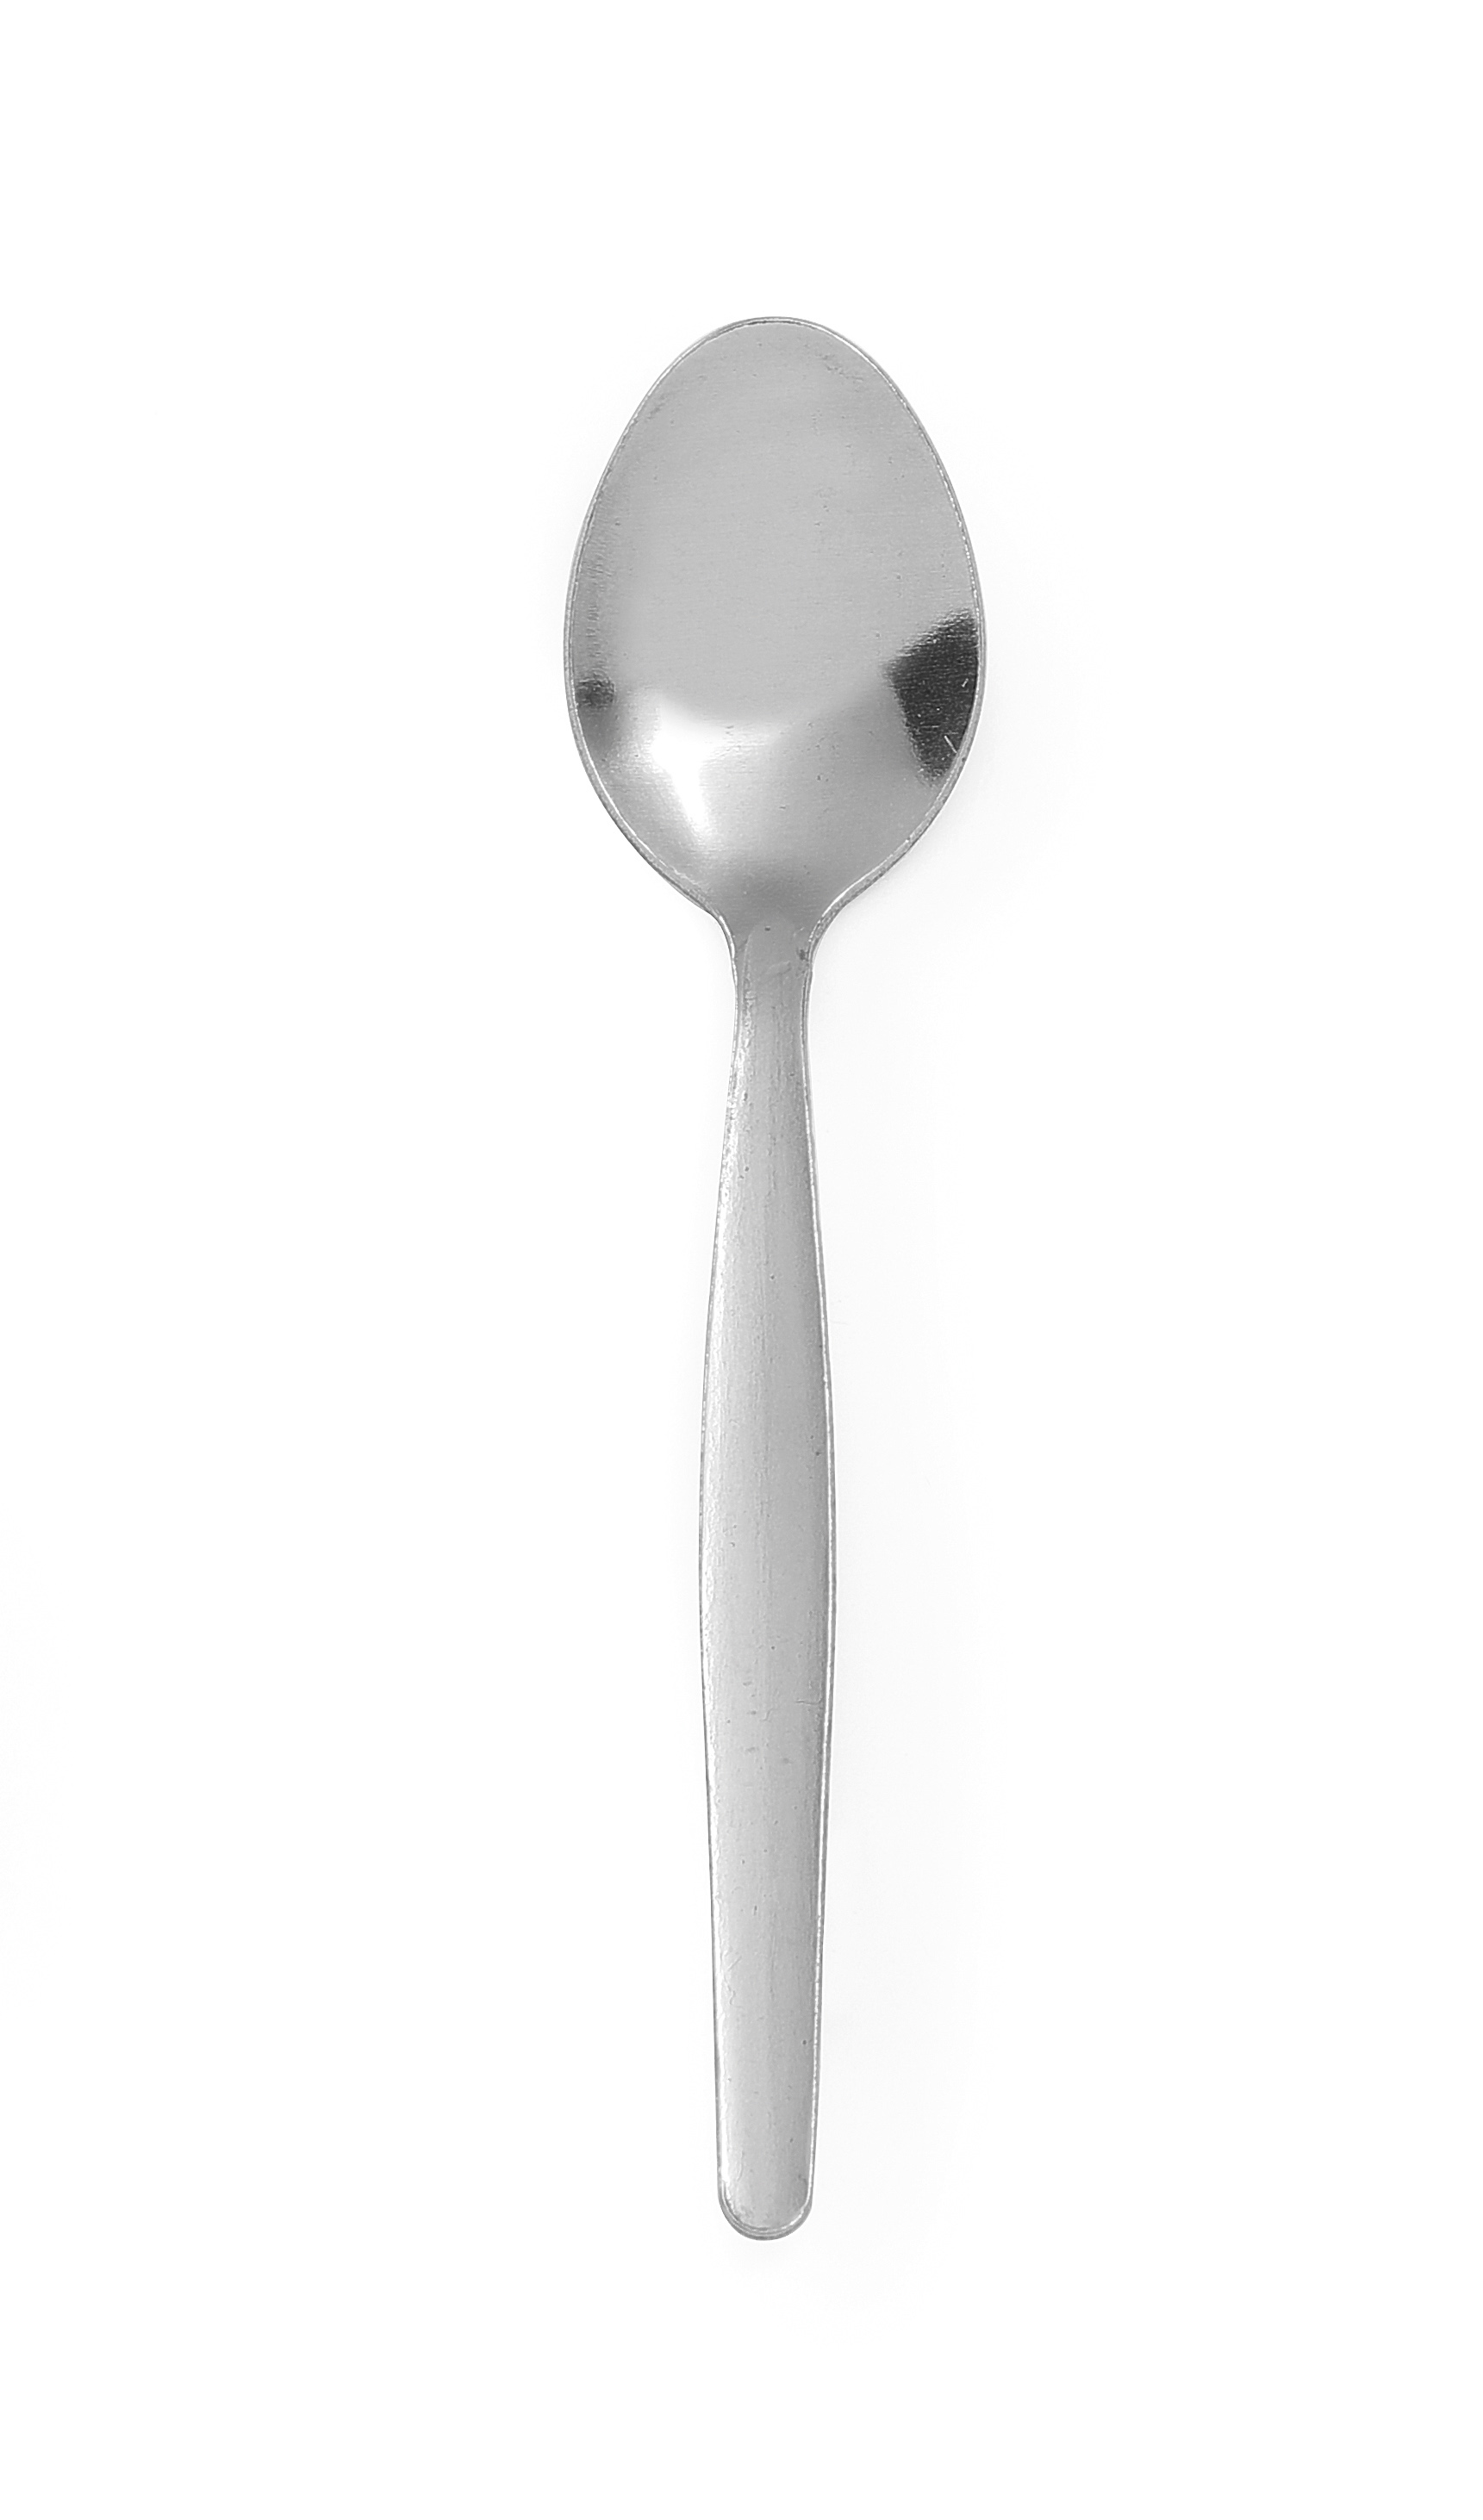 Sidco® Egg Spoons Plastic Colourful Breakfast Set of 24 Teaspoons Tea Spoons 